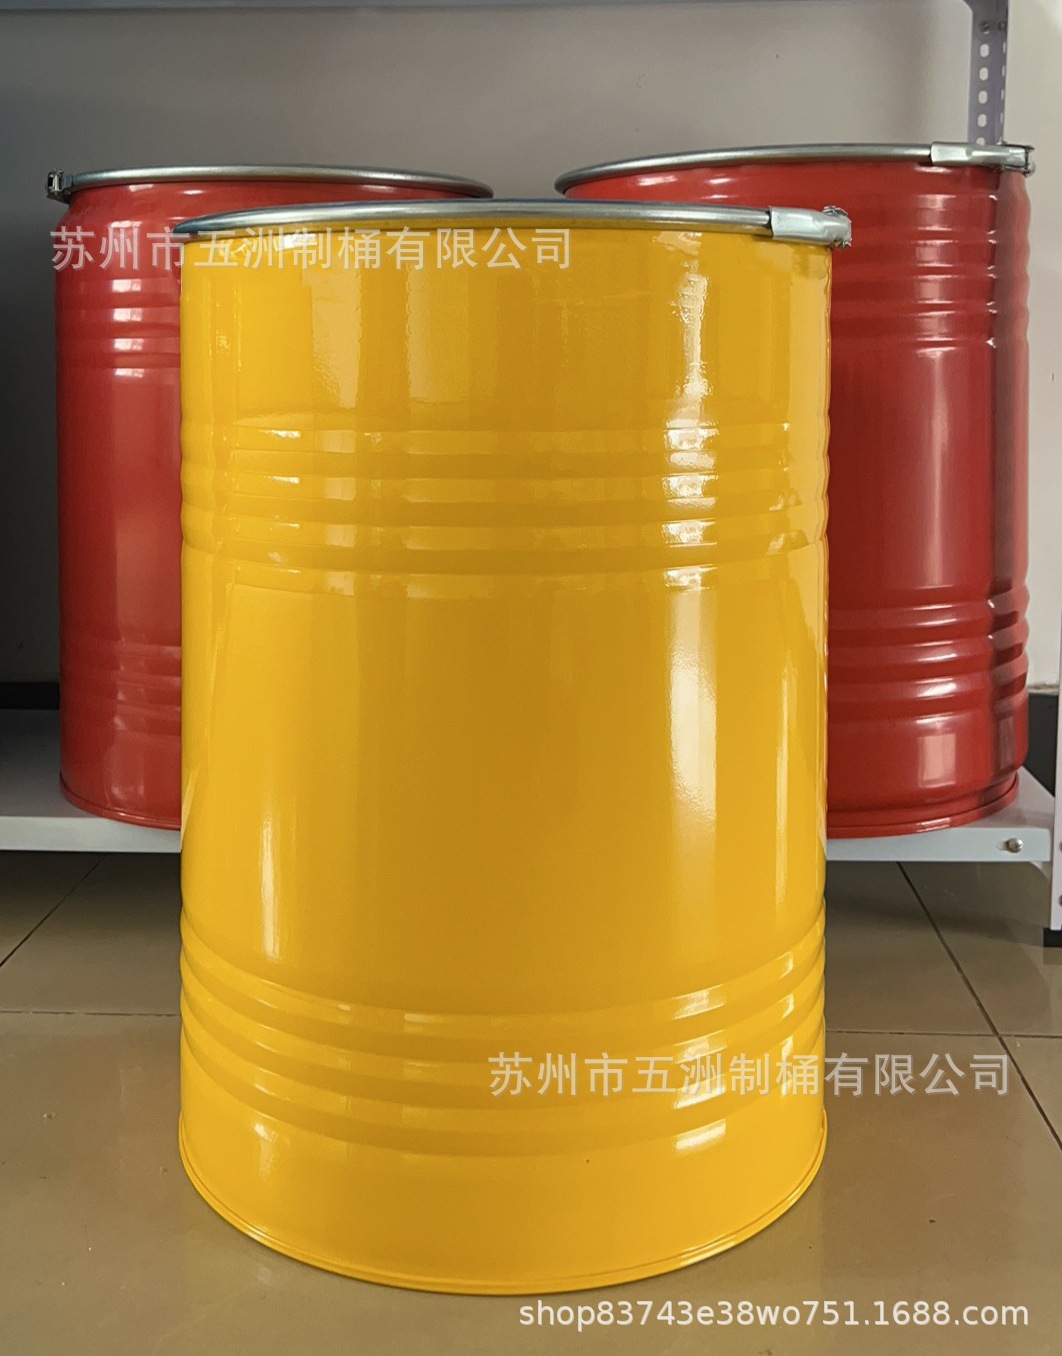 250KG桶 国储包装 硅锰合金桶 稀土桶